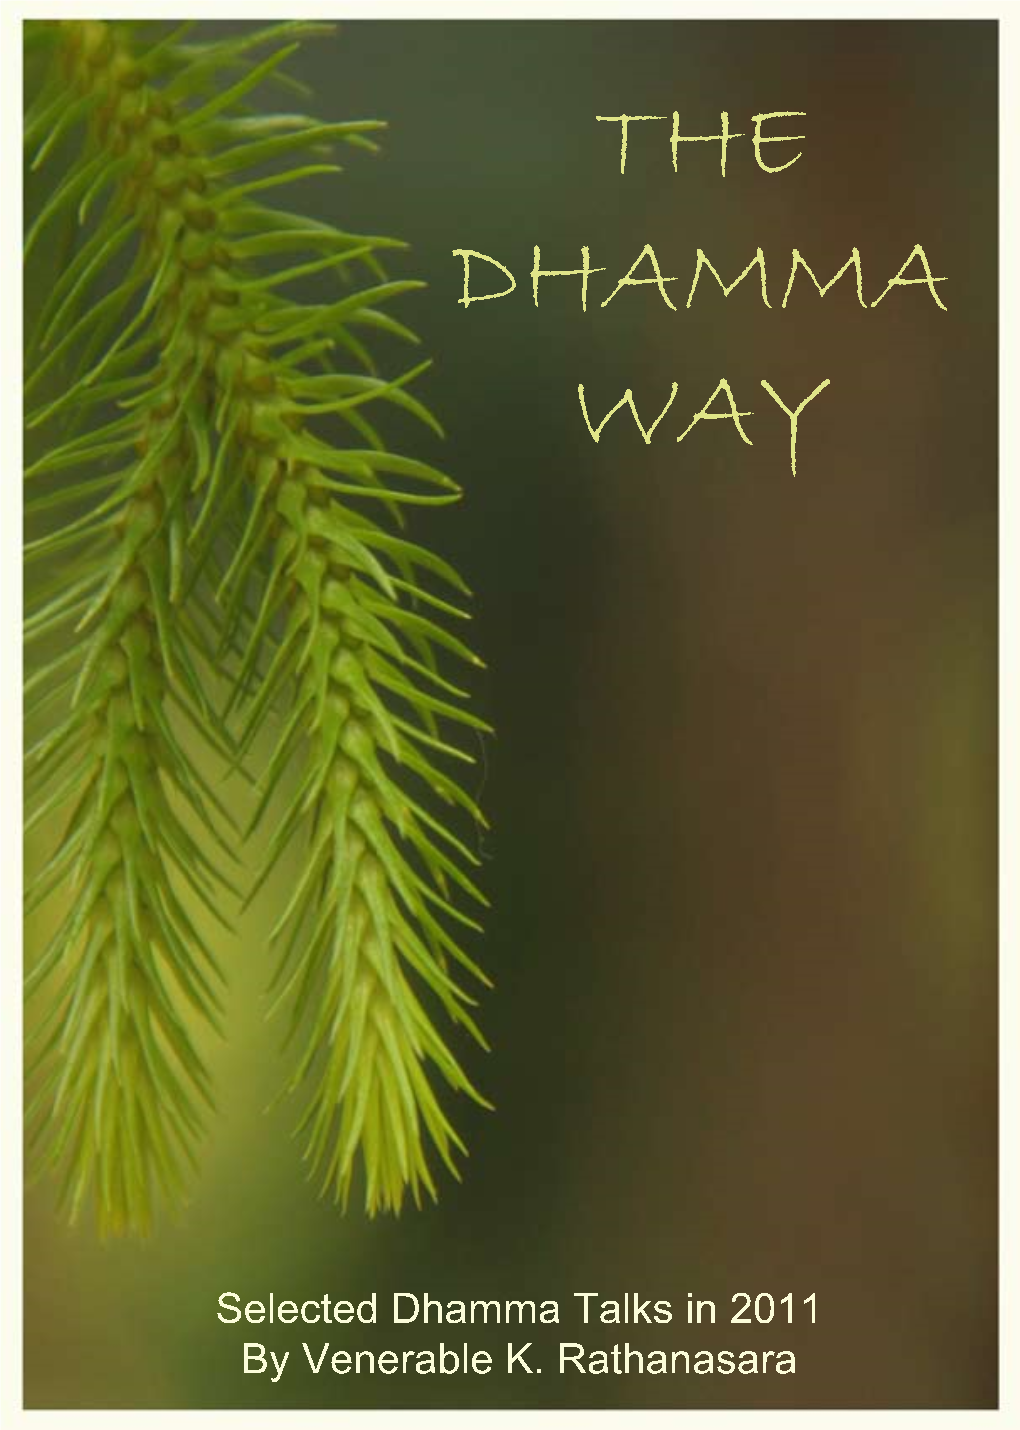 Selected Dhamma Talks in 2011 by Venerable K